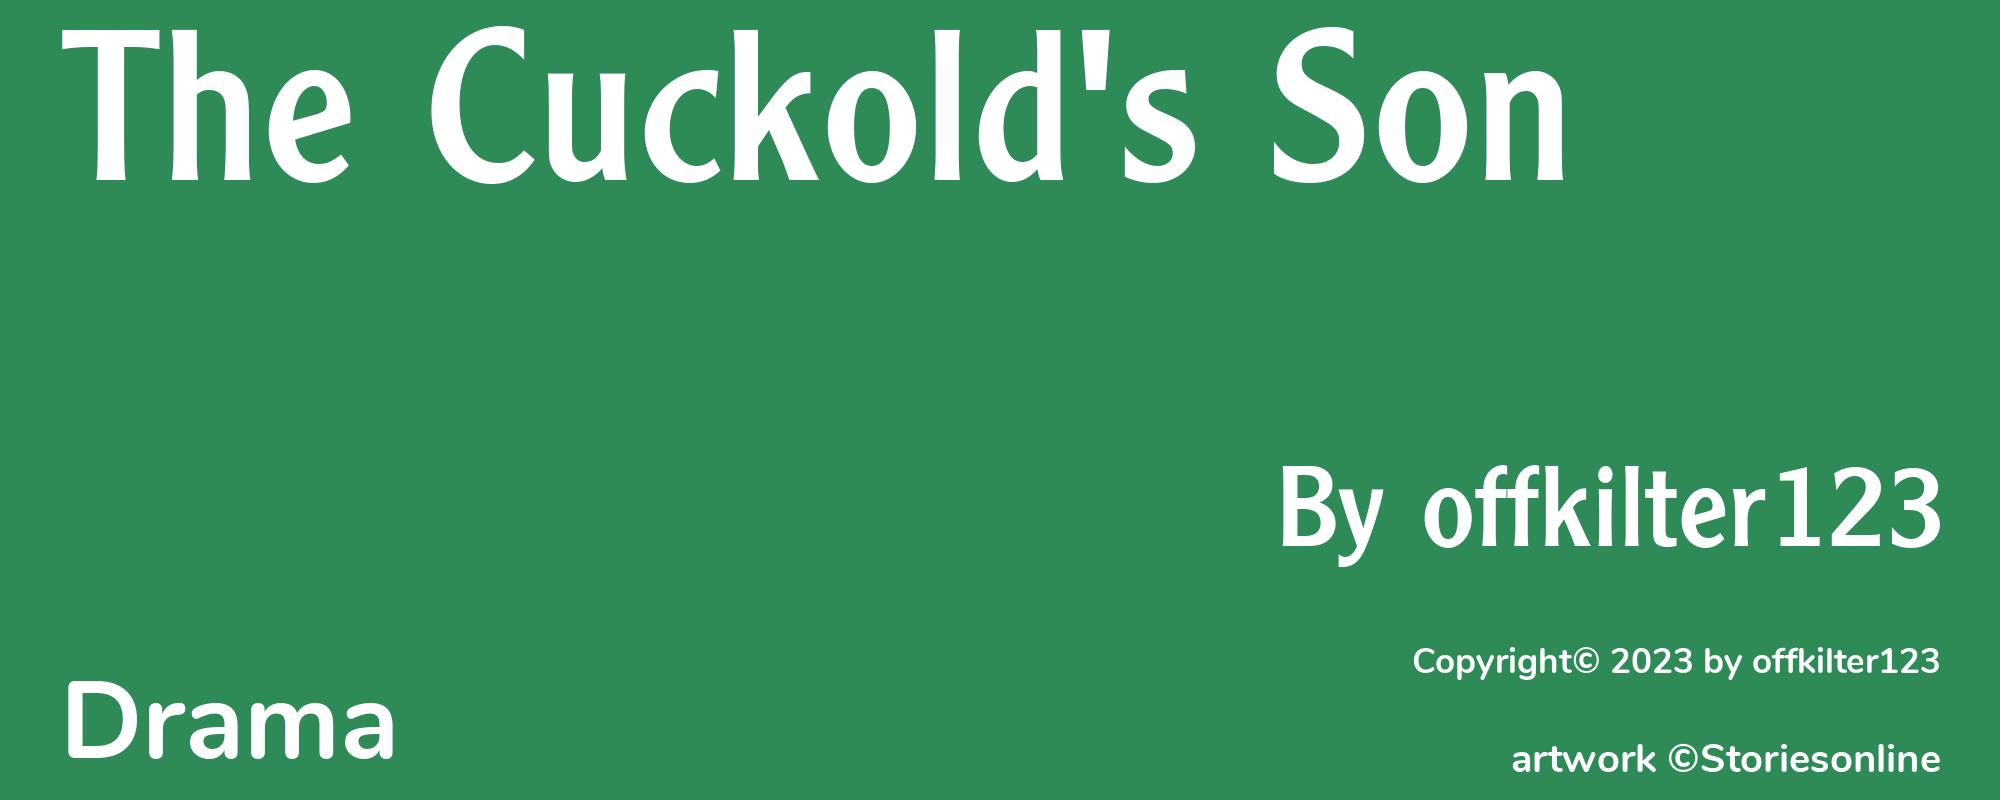 The Cuckold's Son - Cover